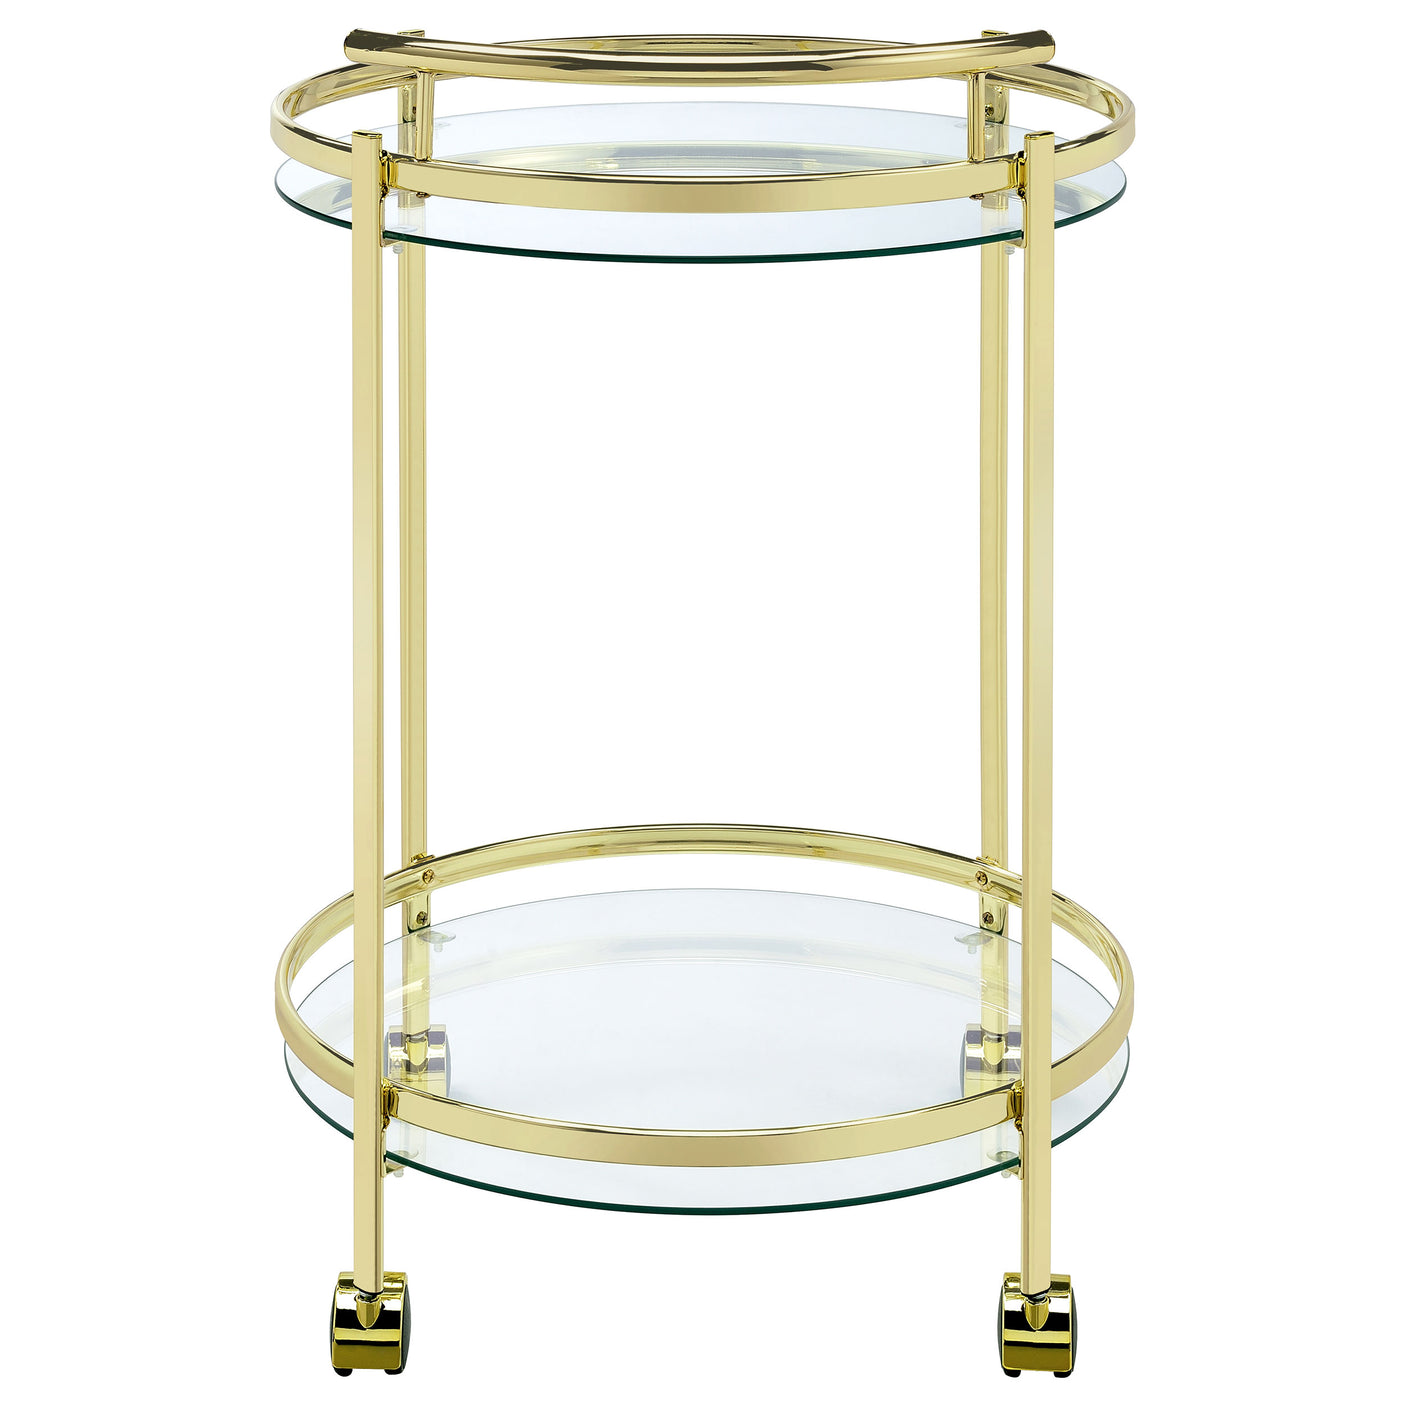 Bar Cart - Chrissy 2-tier Round Glass Bar Cart Brass